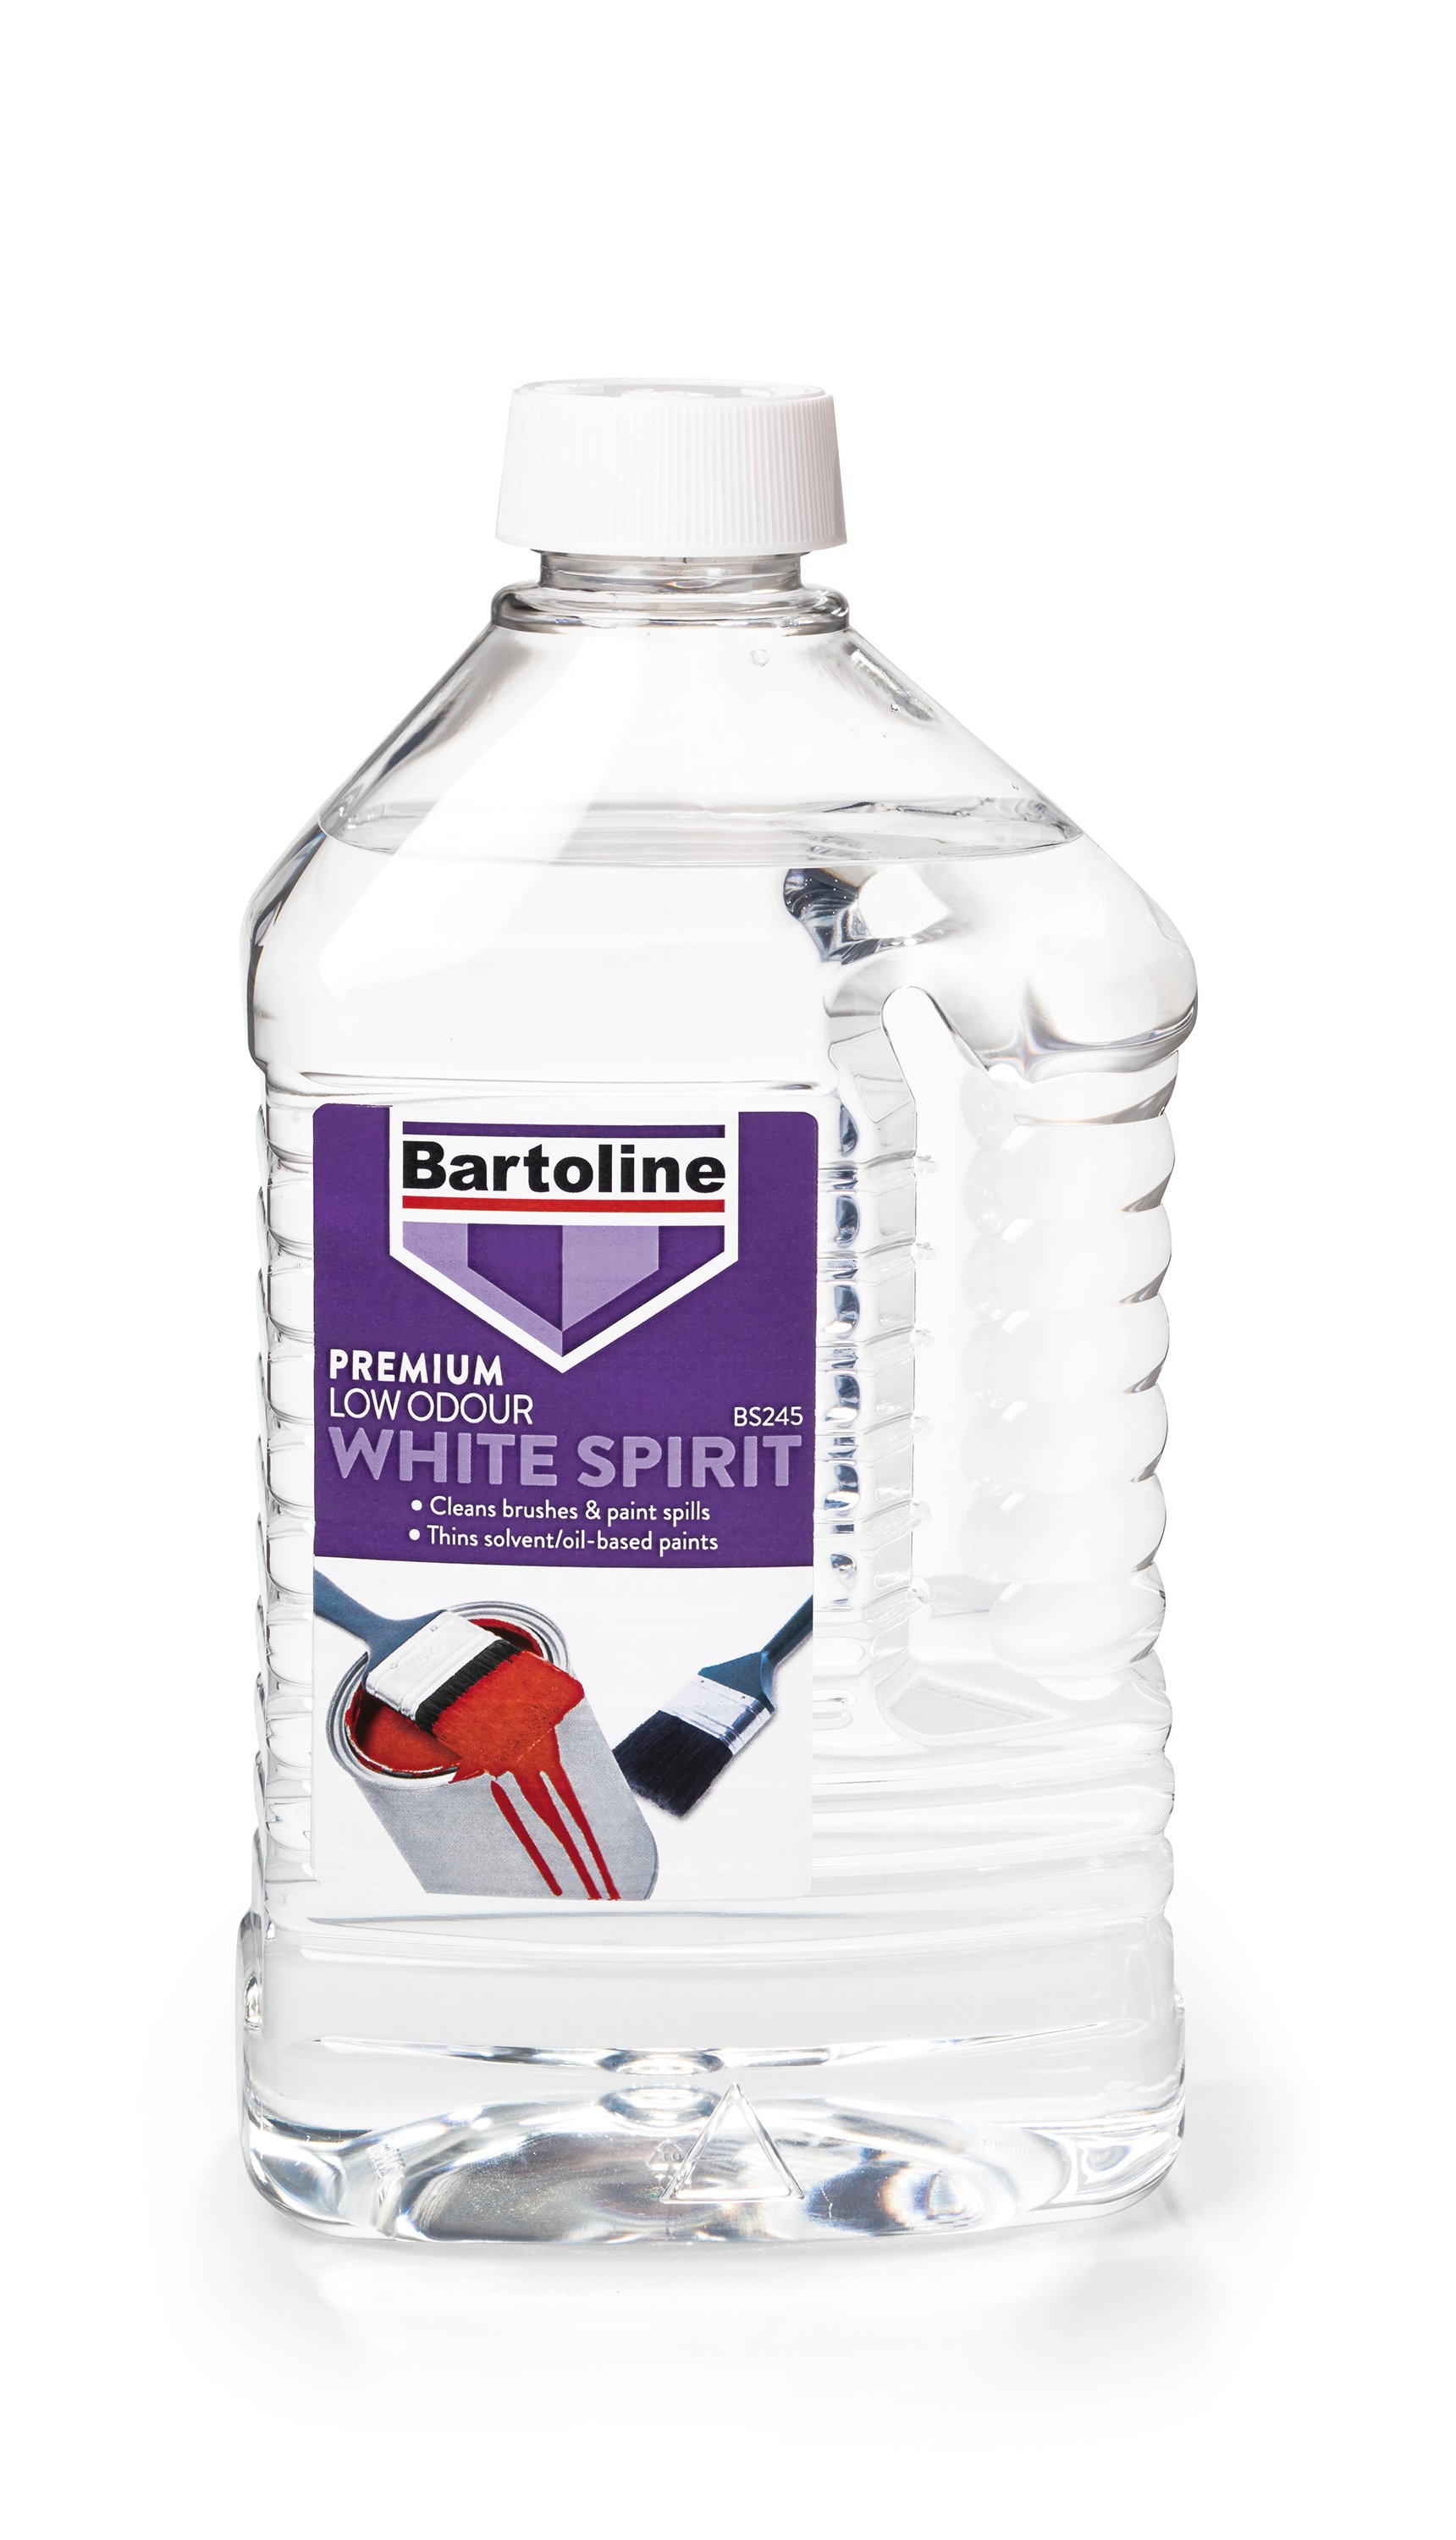 Bartoline 2 Litre Low Odour White Spirit